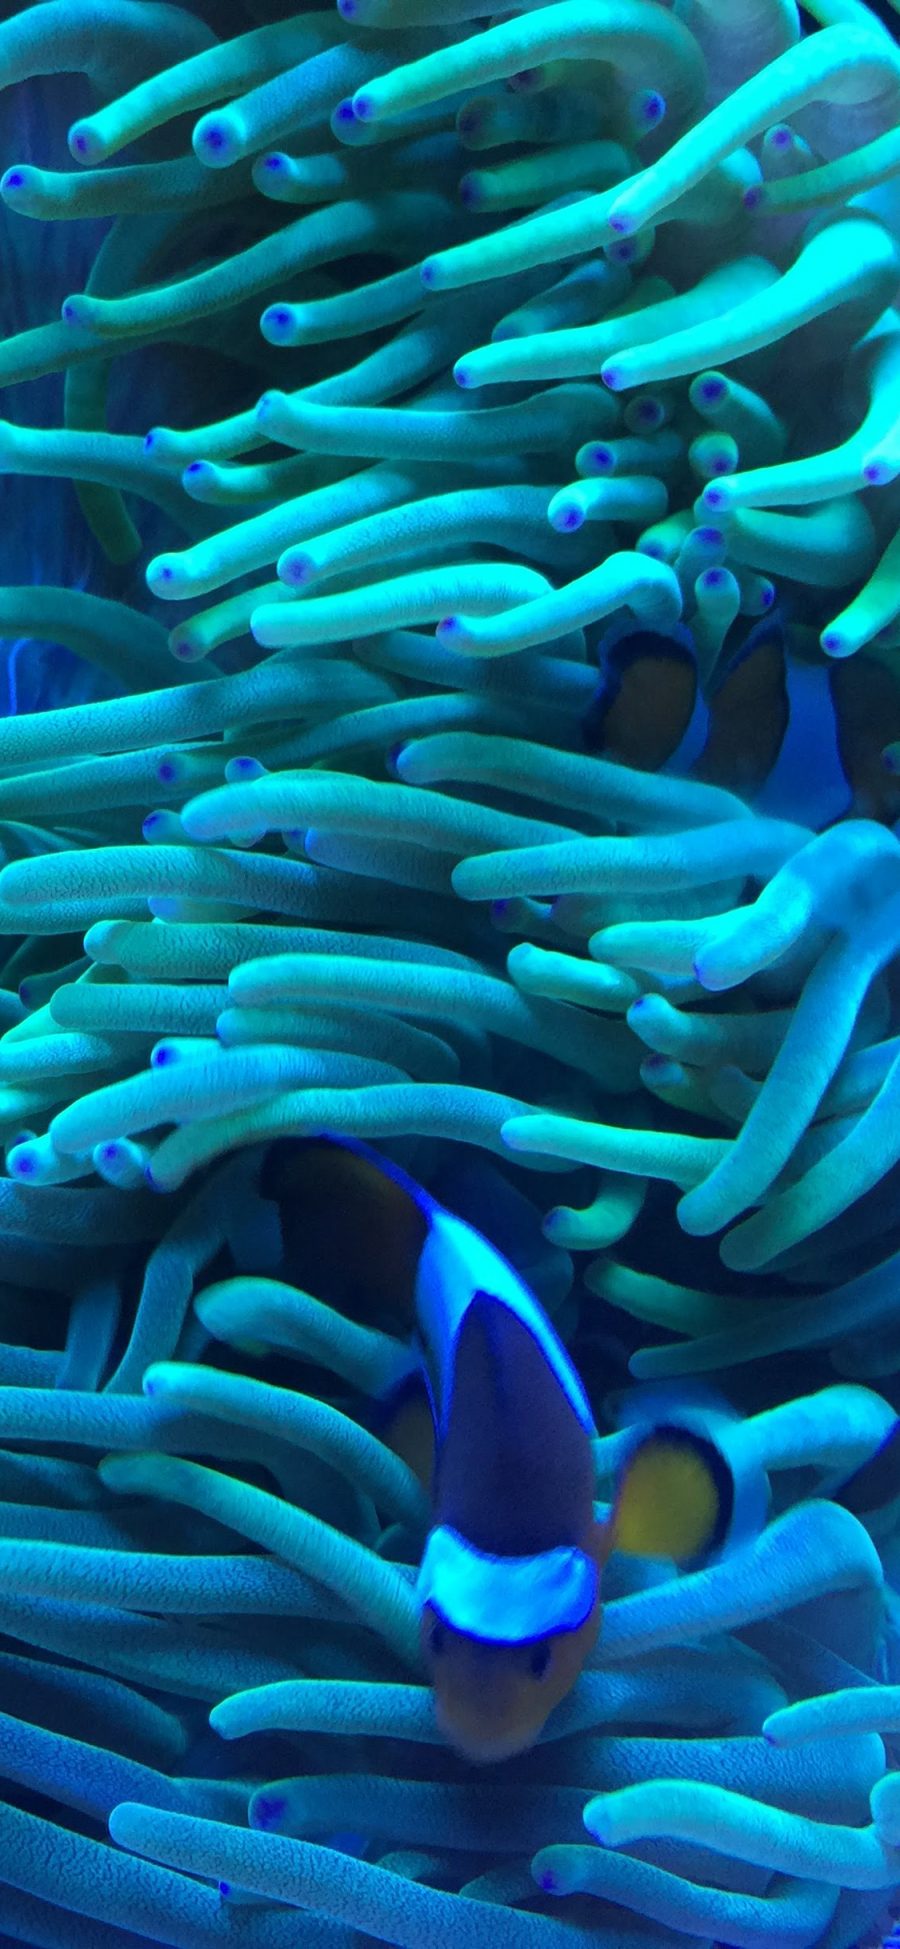 [2436×1125]珊瑚虫 海底 触角 鱼类 苹果手机壁纸图片